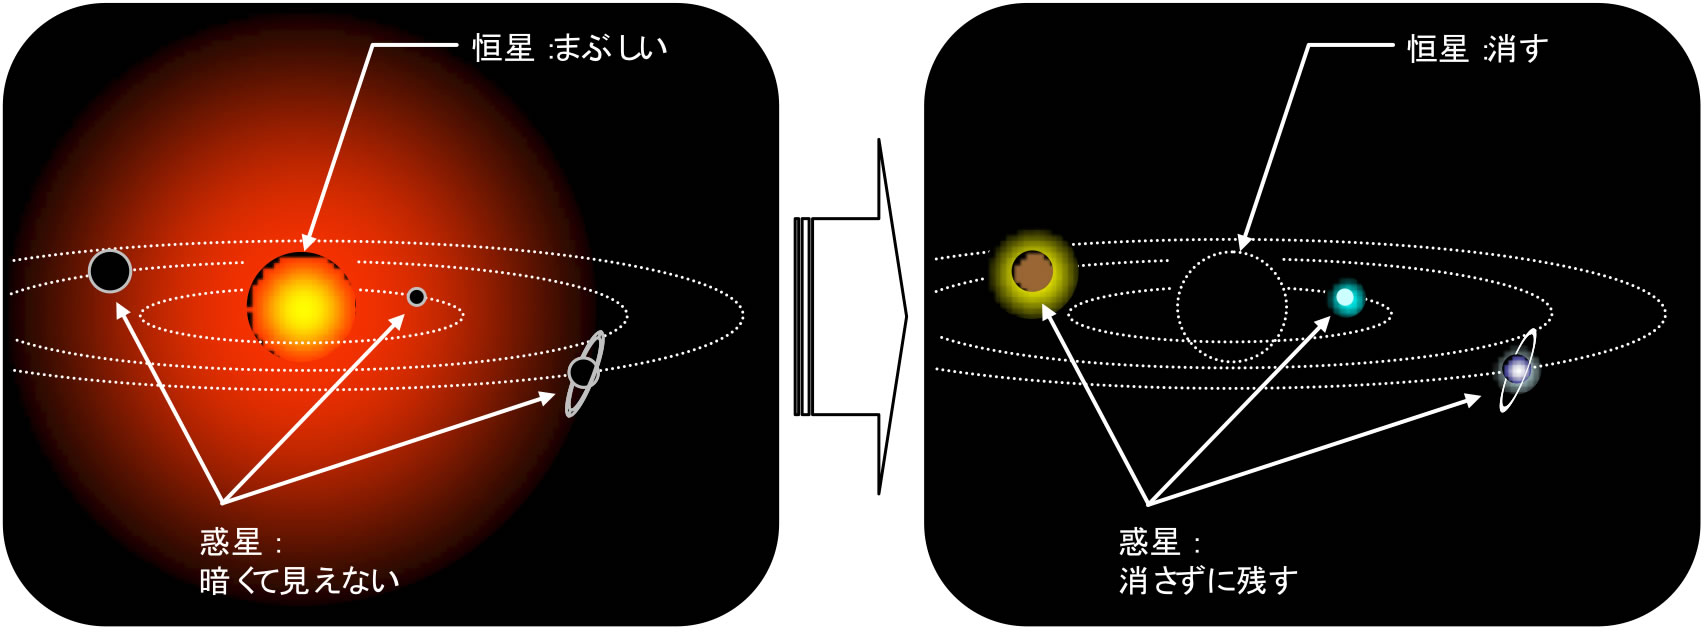 図1：高コントラスト天体観測による系外惑星の直接検出の模式図。圧倒的に明るい恒星のみを、特殊な技術で除去する。